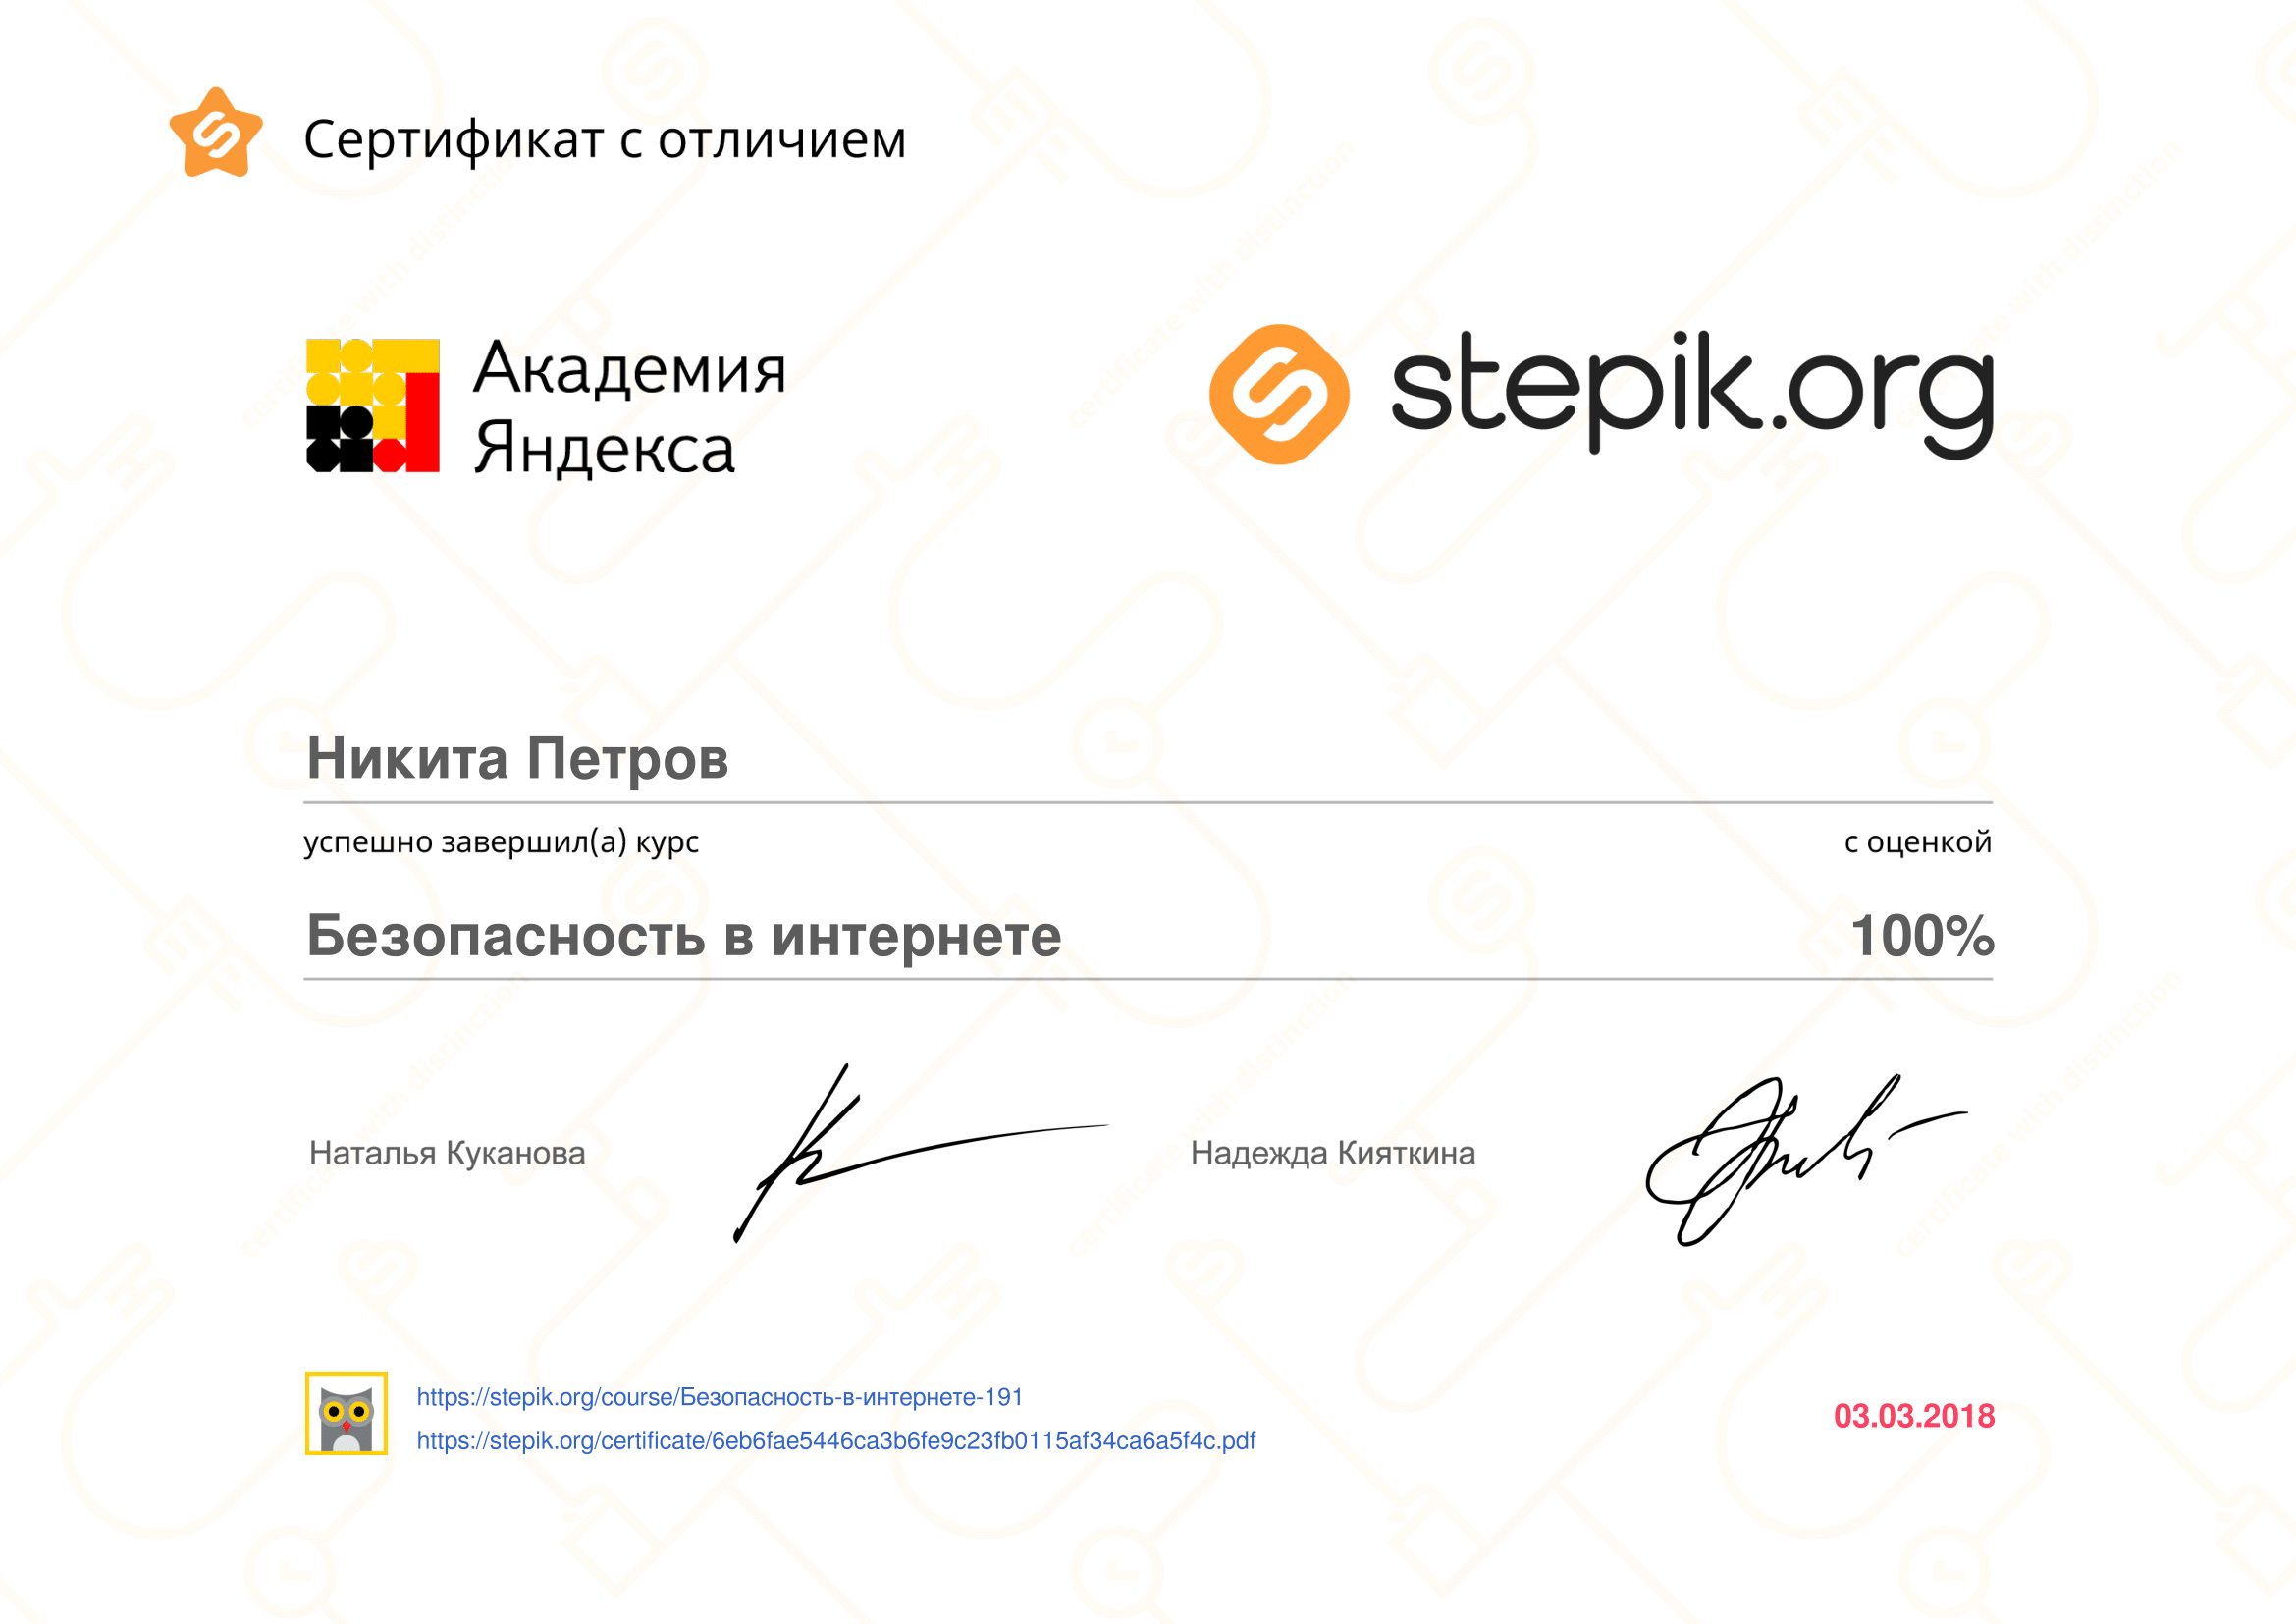 stepik-certificate-191-6eb6fae-1.png